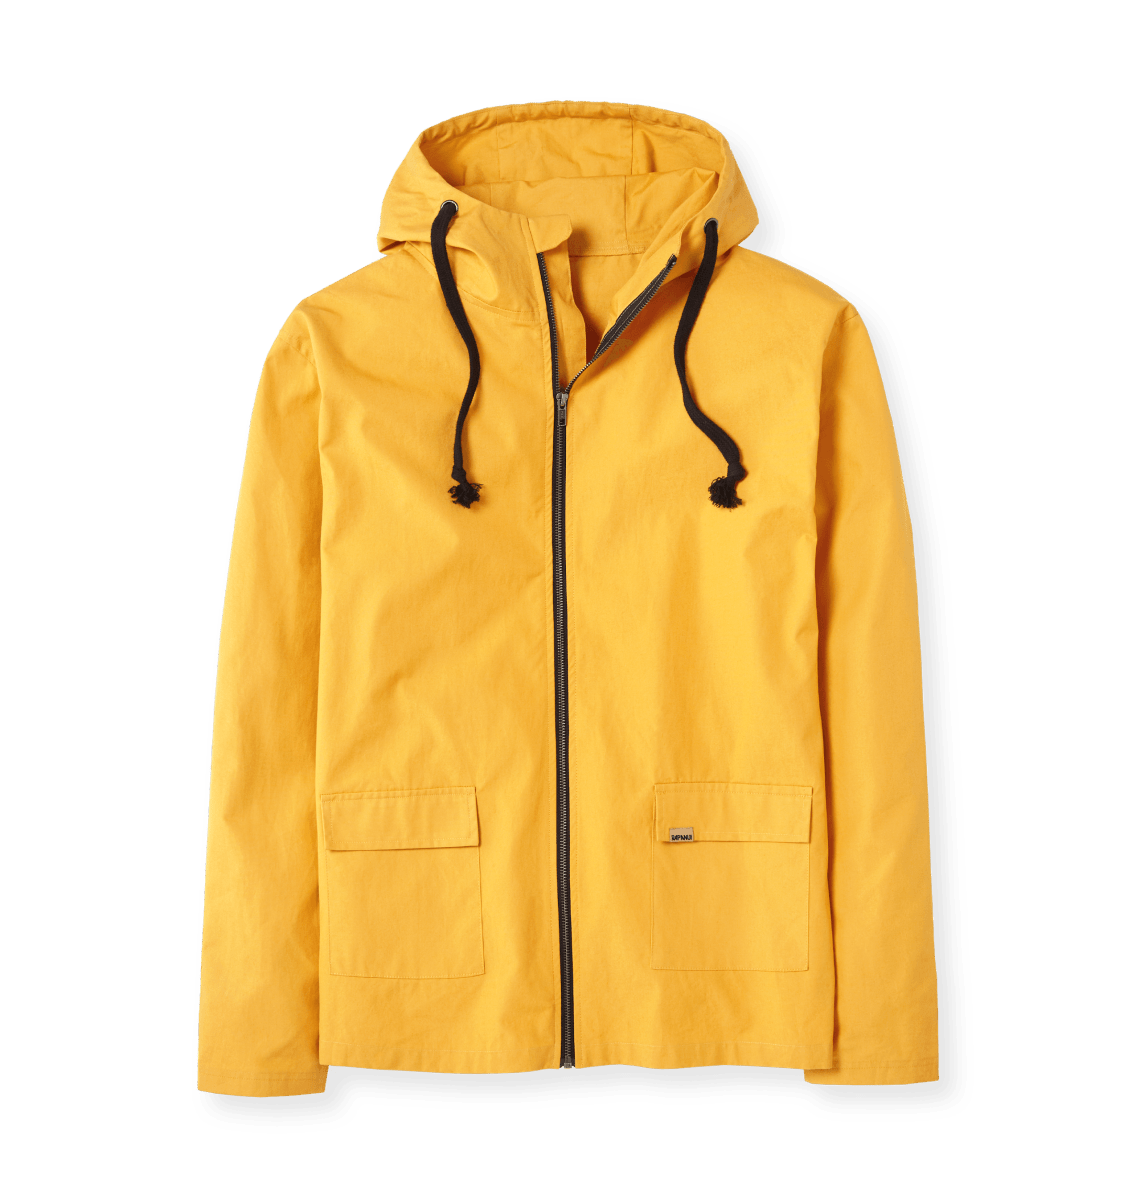 Women's Seaward Lightweight Jacket - Jackets & coats